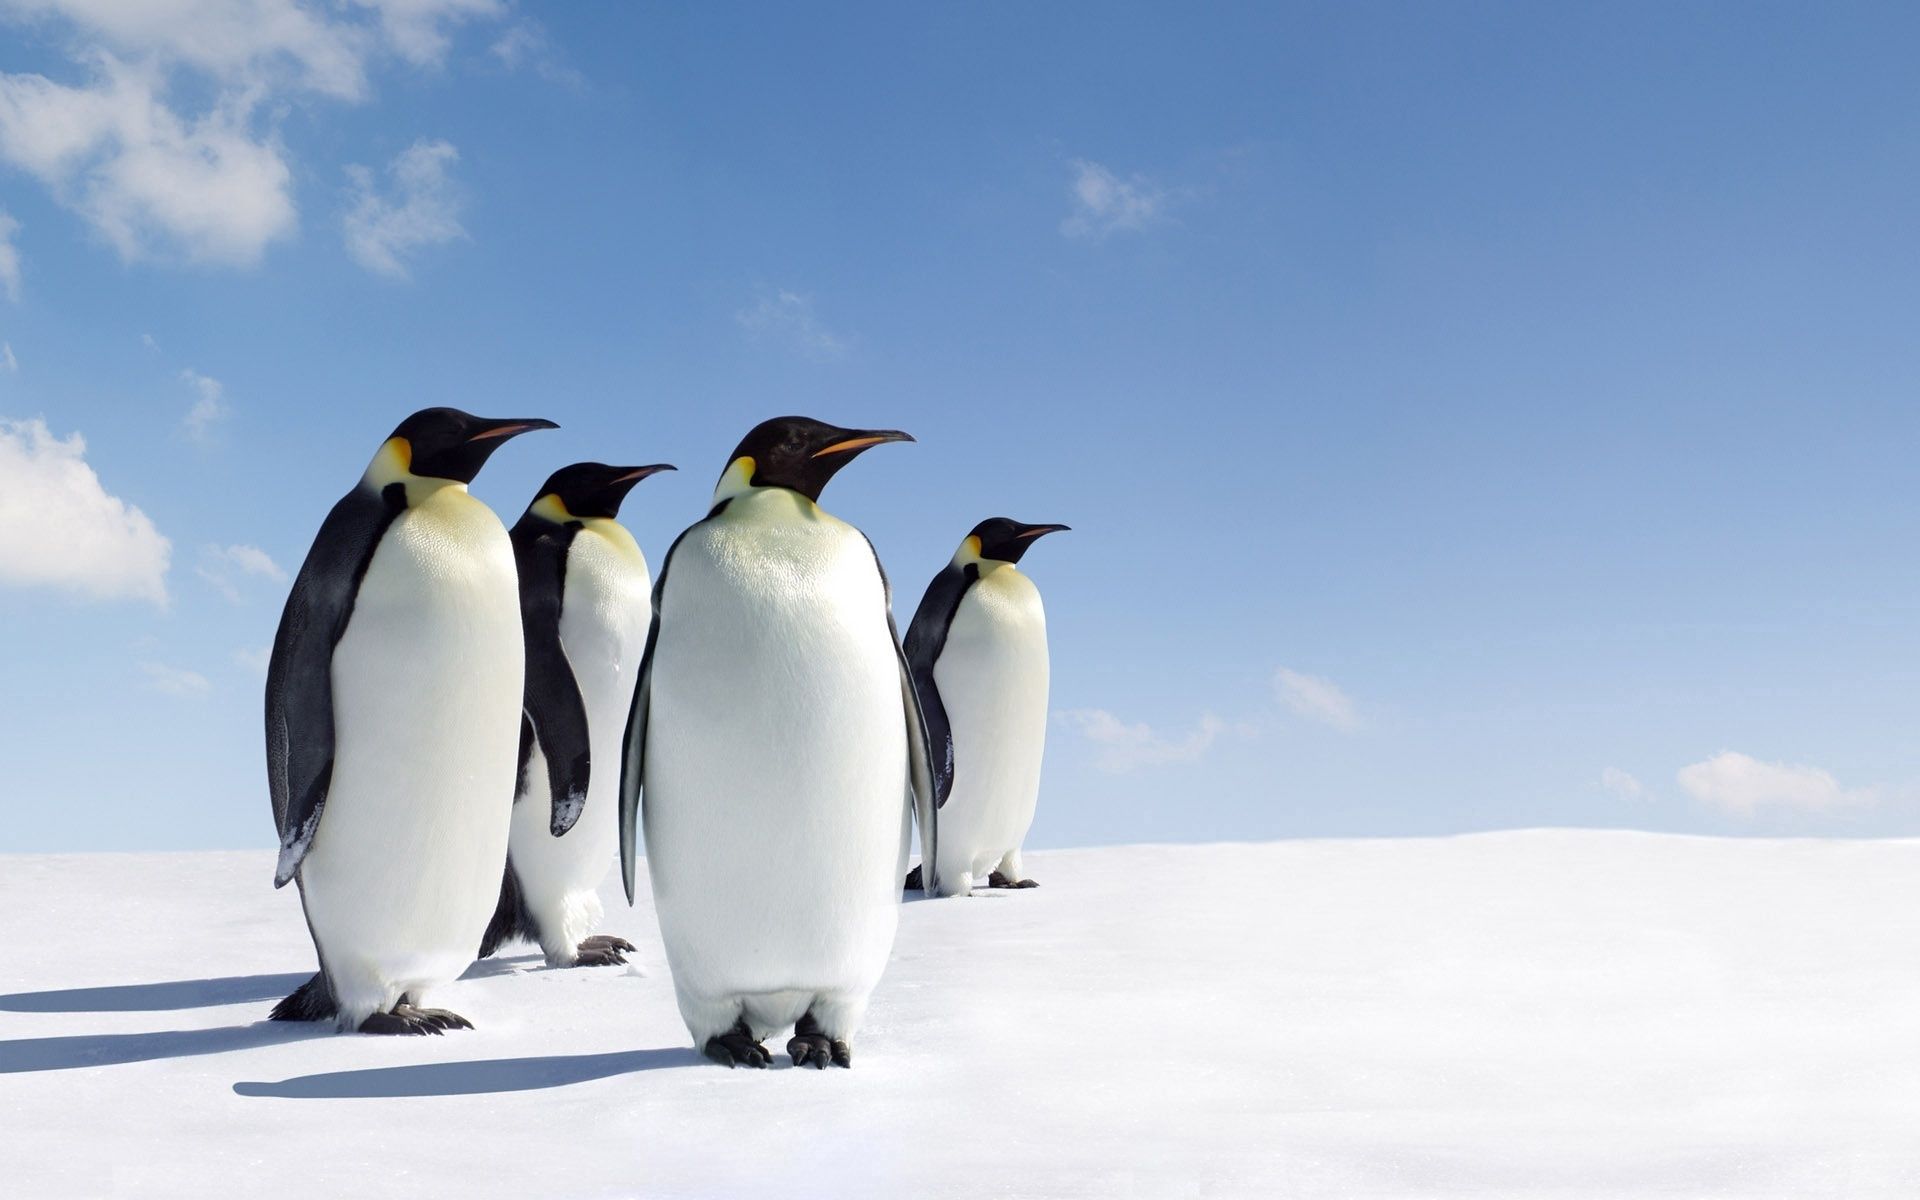 Скачать обои Пингвины на телефон бесплатно